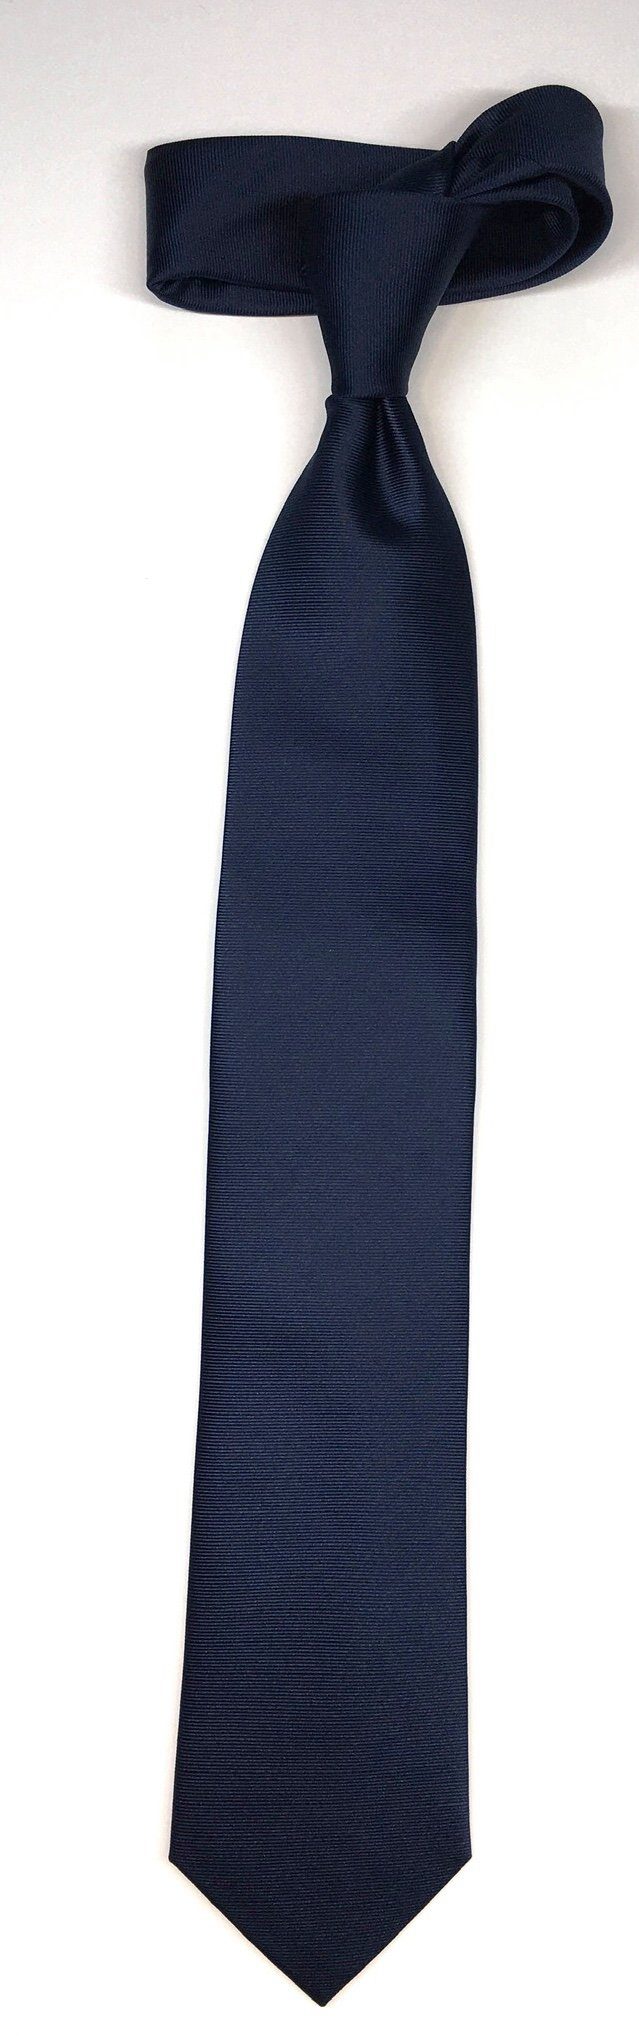 Seidenfalter Krawatte Seidenfalter Uni Krawatte im Design Uni Krawatte edlen Marine 7cm Seidenfalter